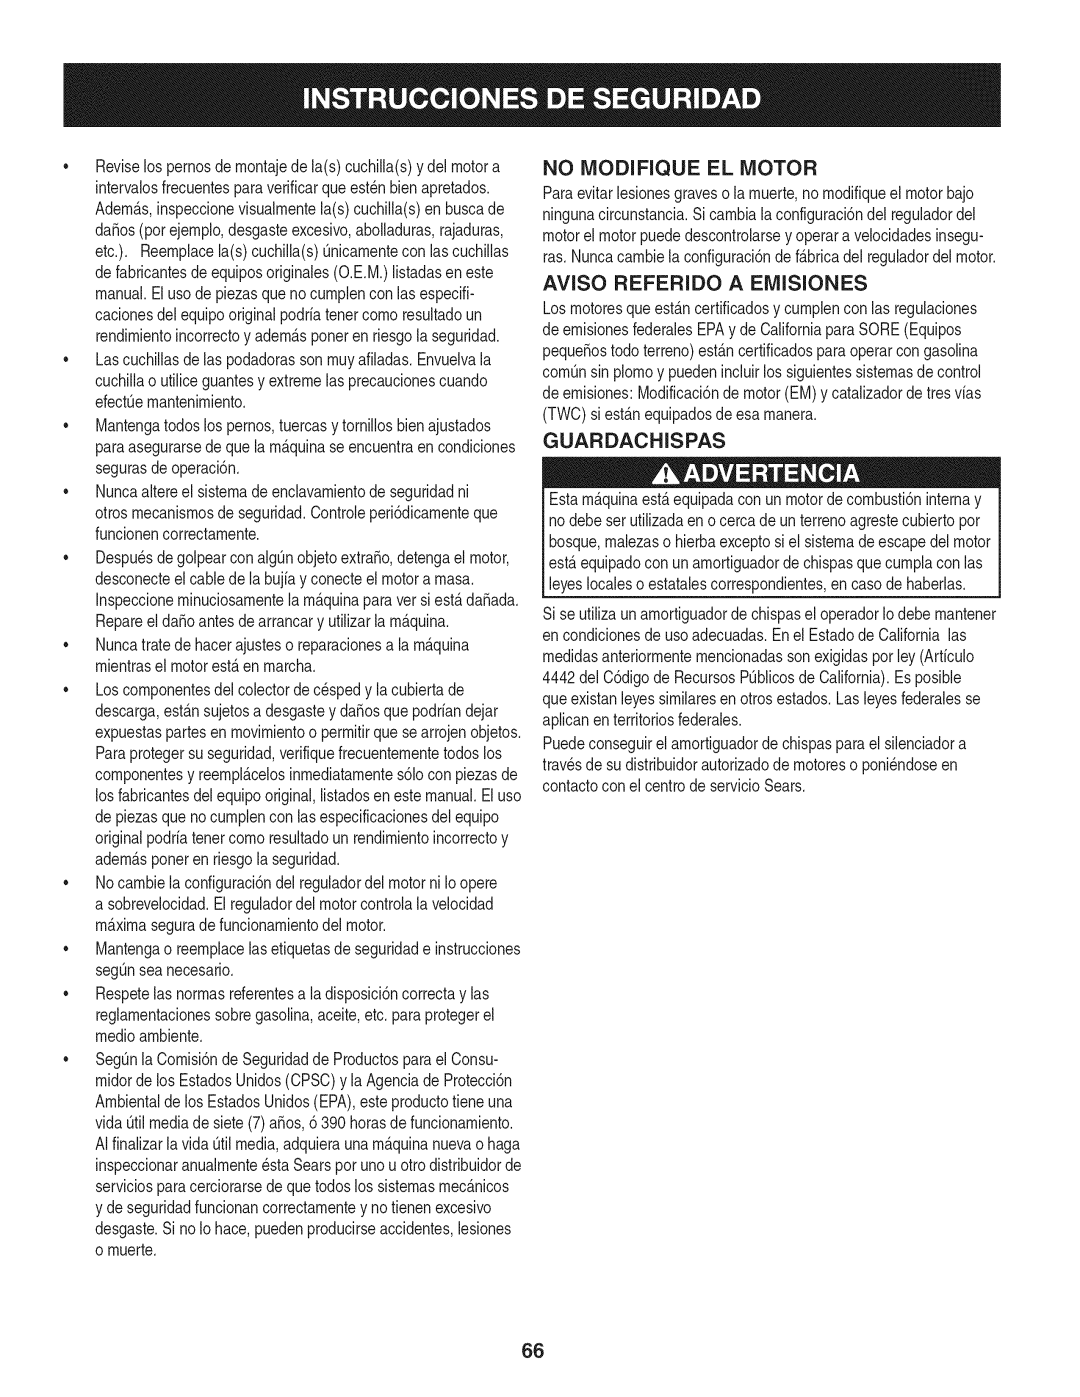 Craftsman PGT9000, 247.28984 manual No Modifique El Motor, Guardachispas 